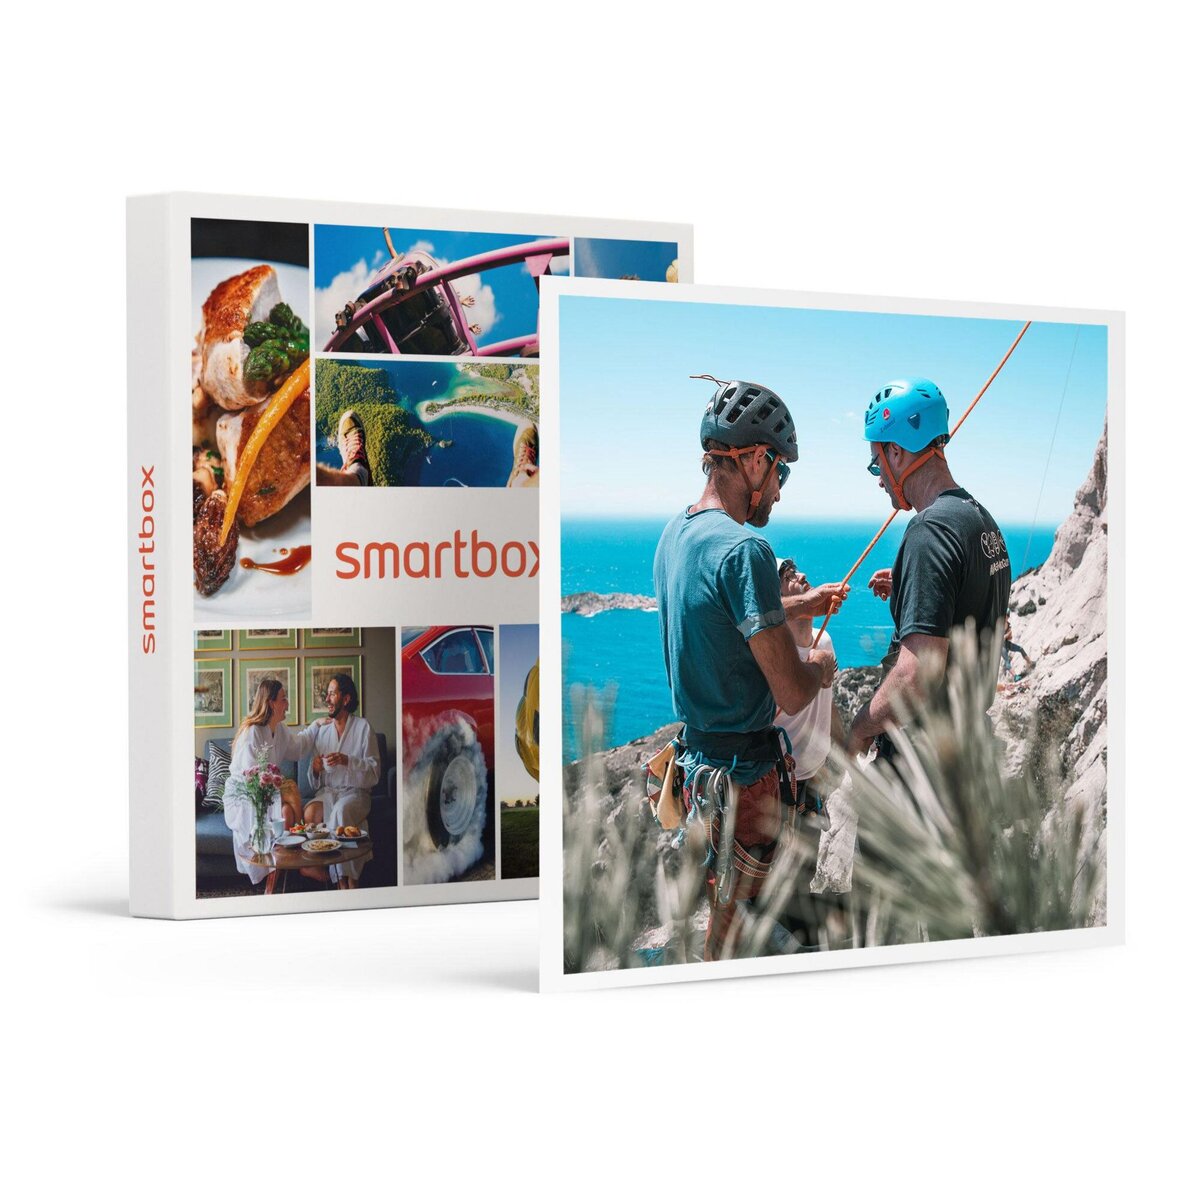 Smartbox Escalade pour 4 personnes dans les Calanques de Marseille : 1 journée - Coffret Cadeau Sport & Aventure